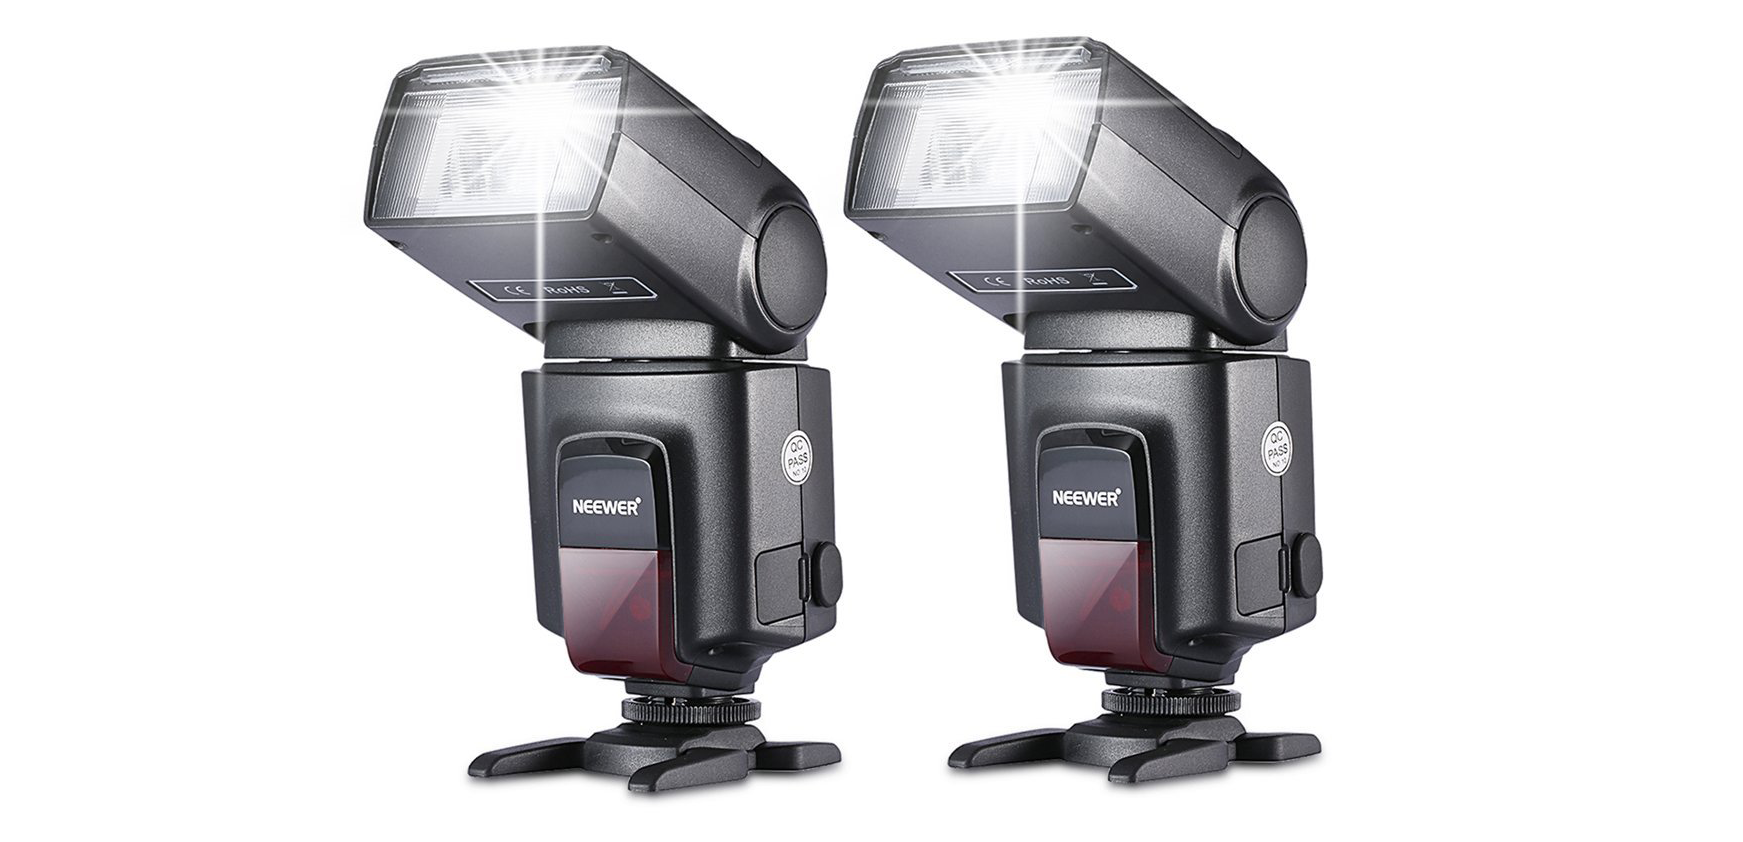 Choix lumineux : sélection des flashs d'appareil photo parfaits